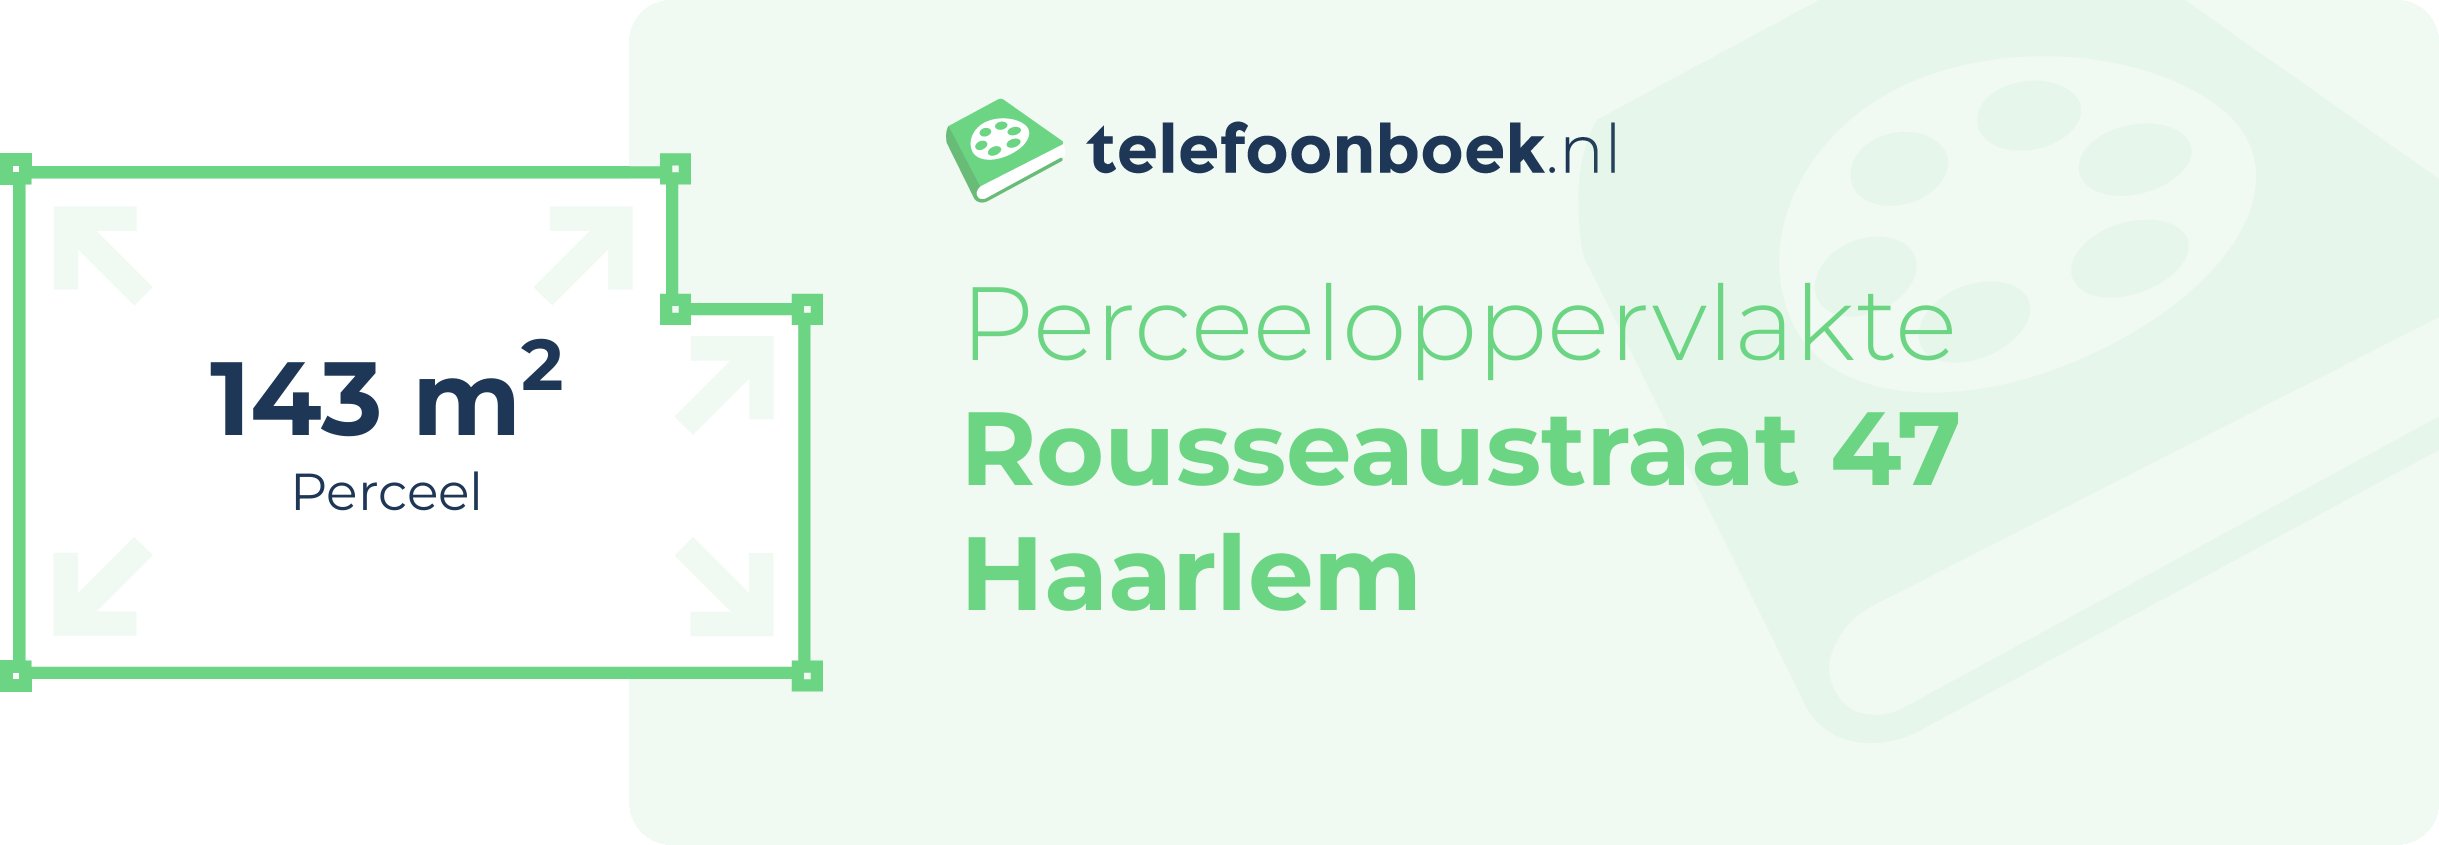 Perceeloppervlakte Rousseaustraat 47 Haarlem